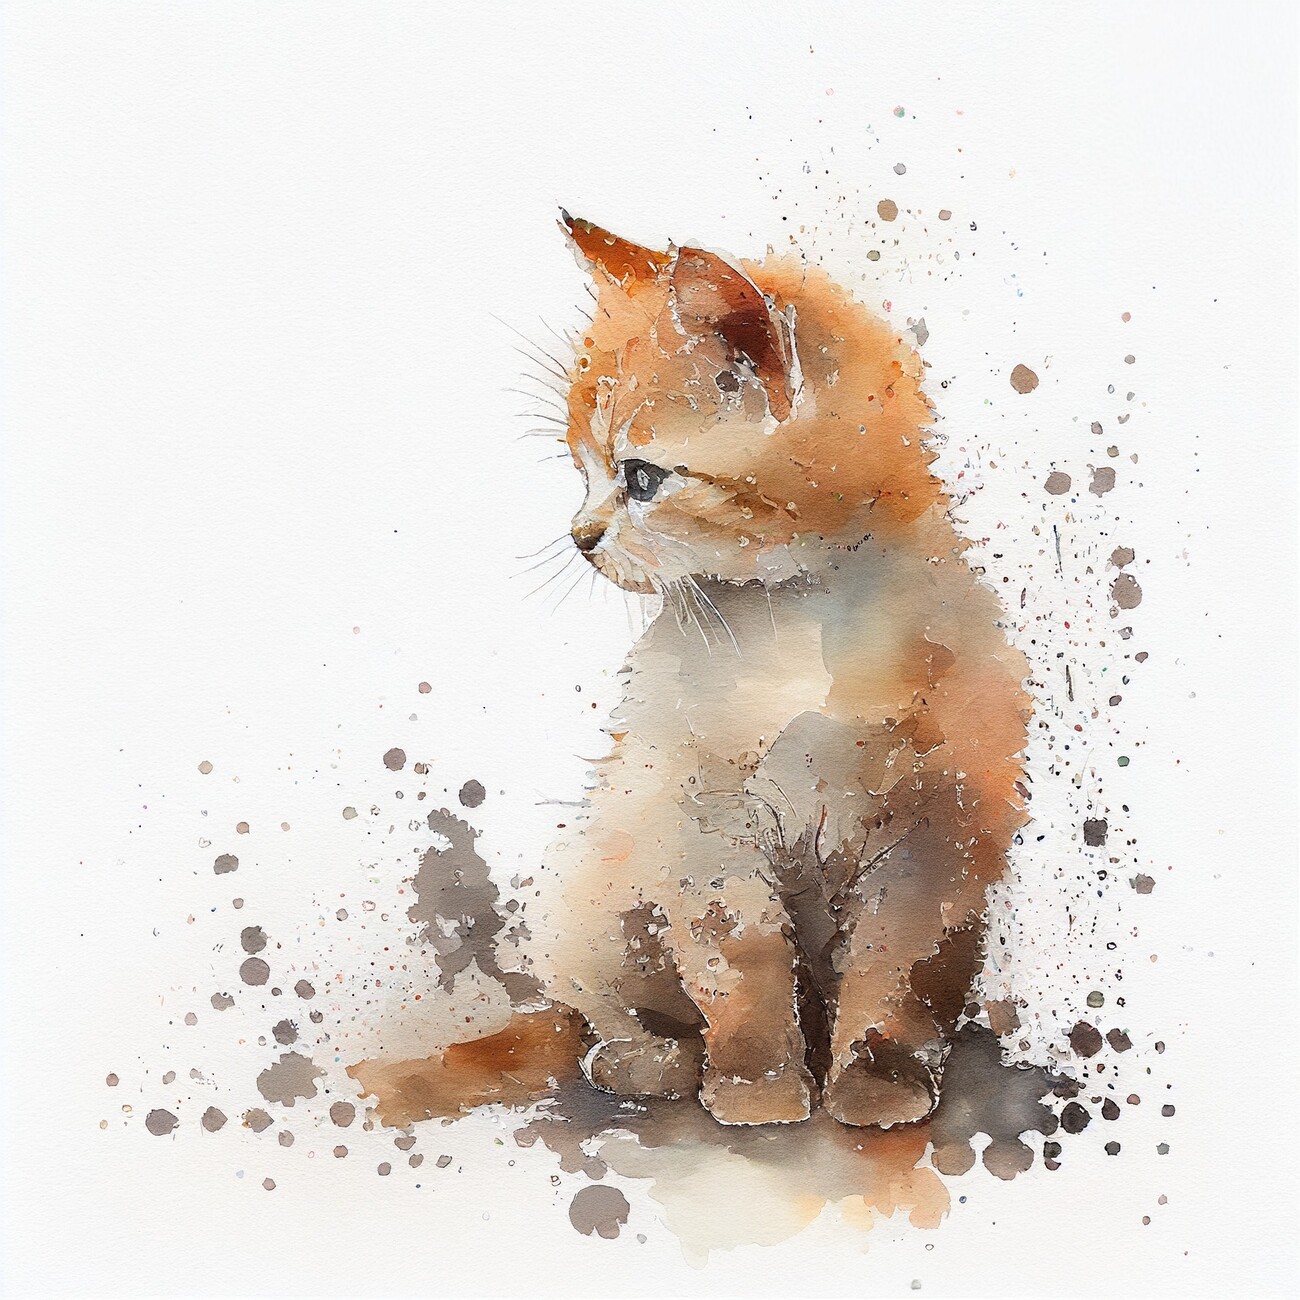 Taiteelliset kuva | Kitten, Cat, watercolor image, minimalist, warm colors  | Europosters